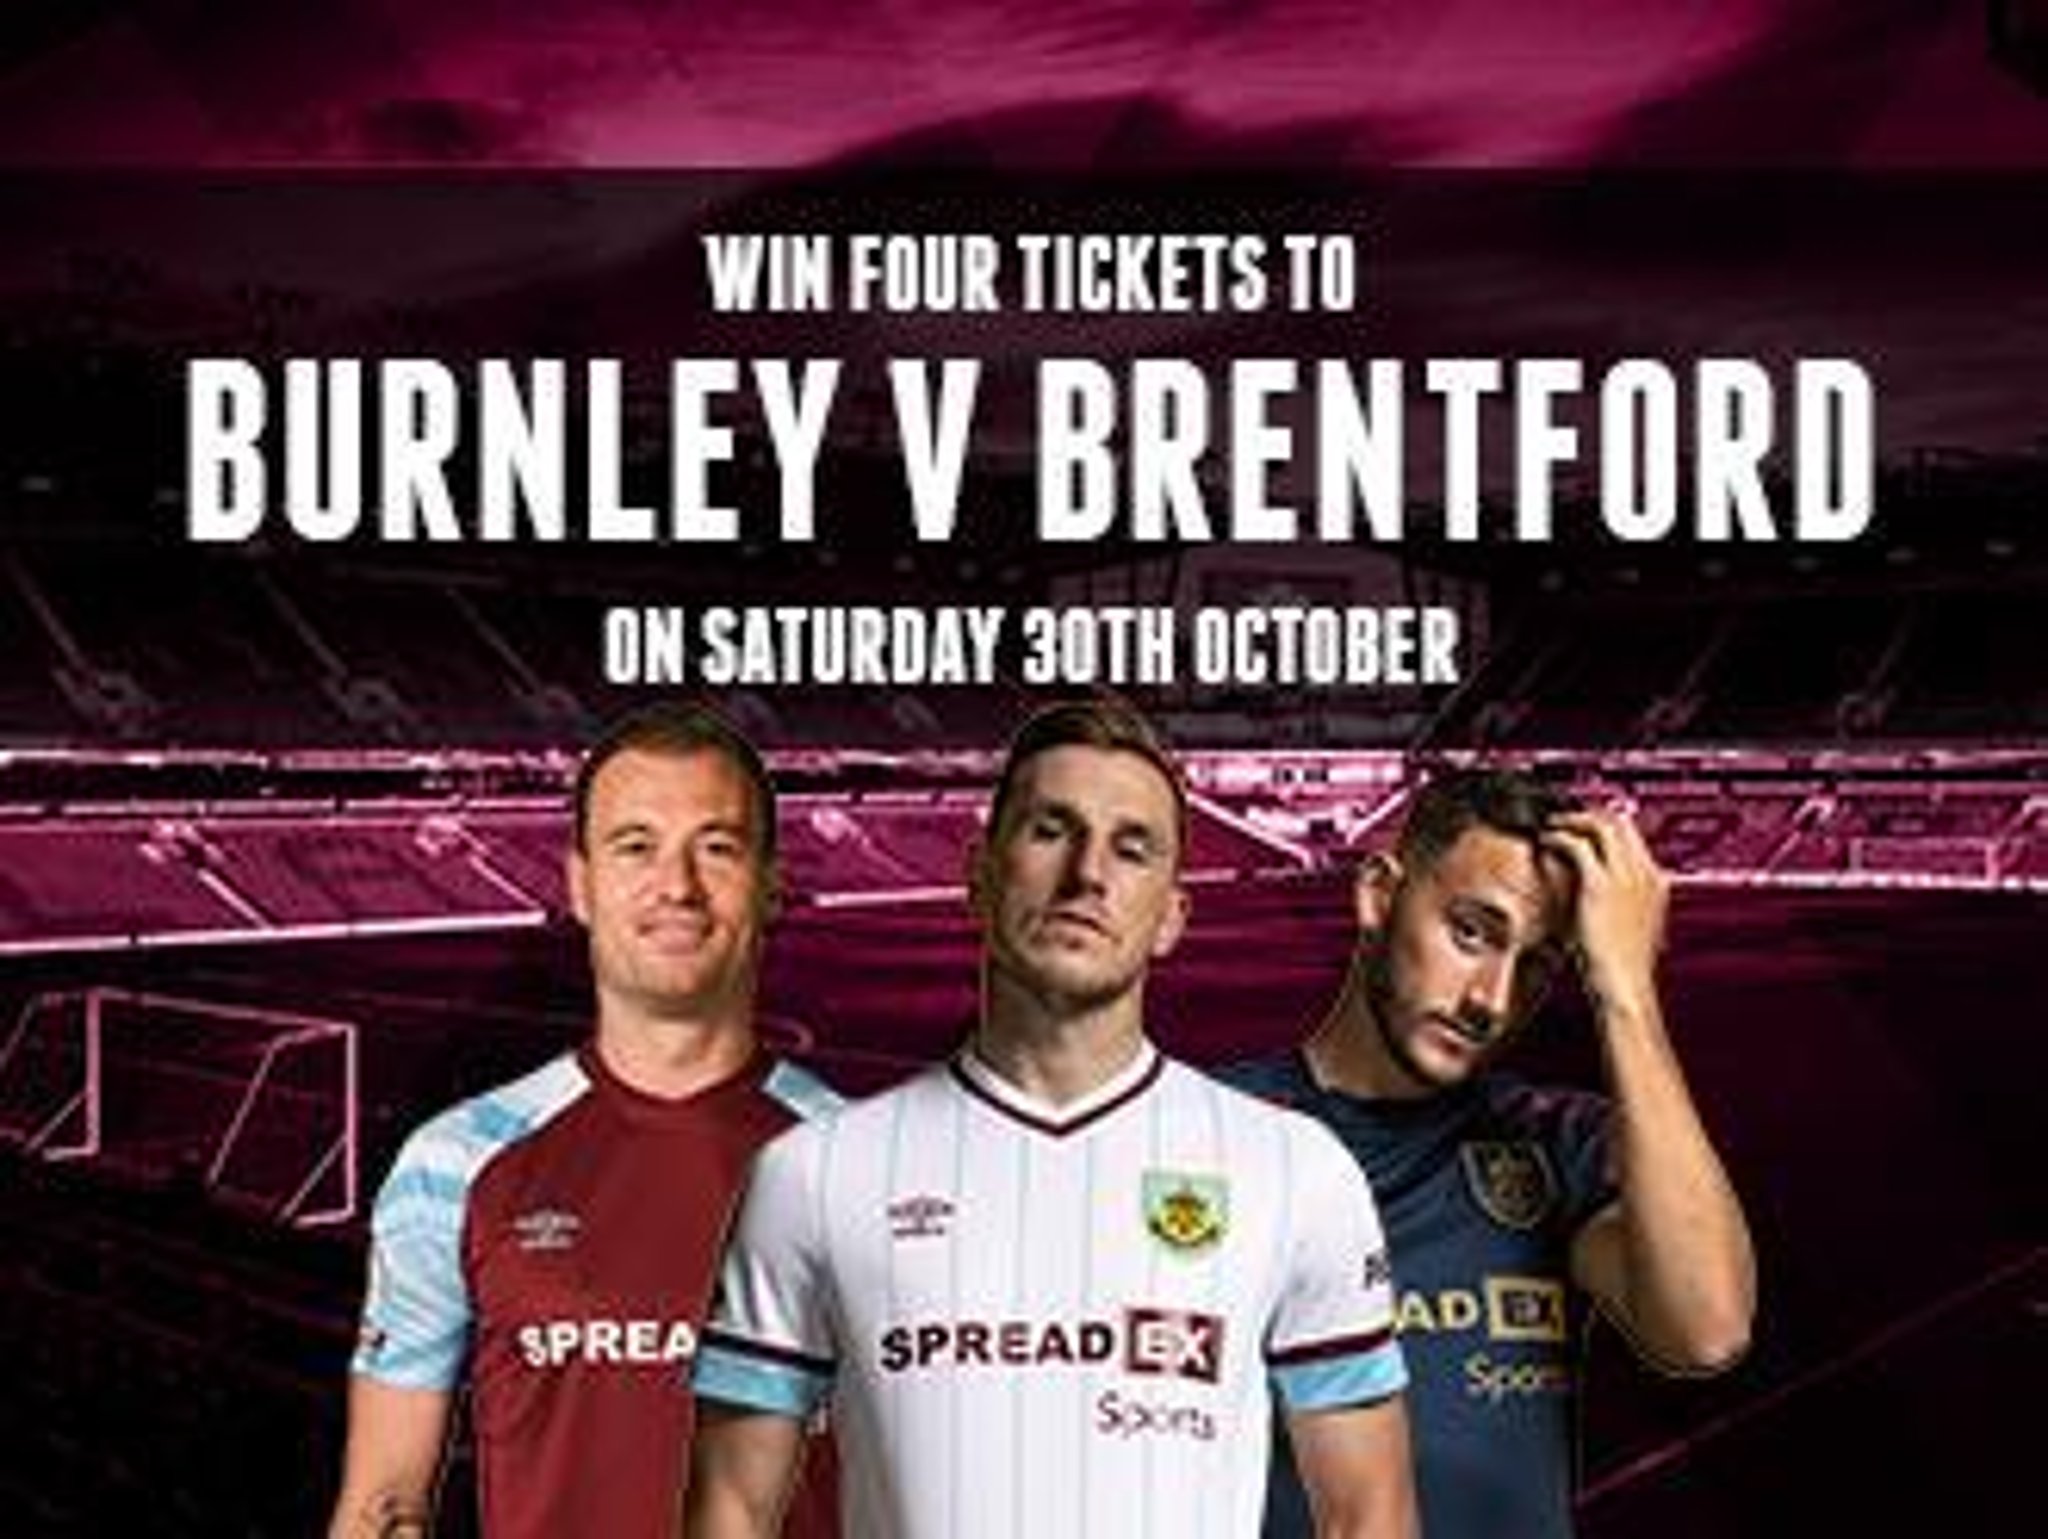 Burnley vs brentford